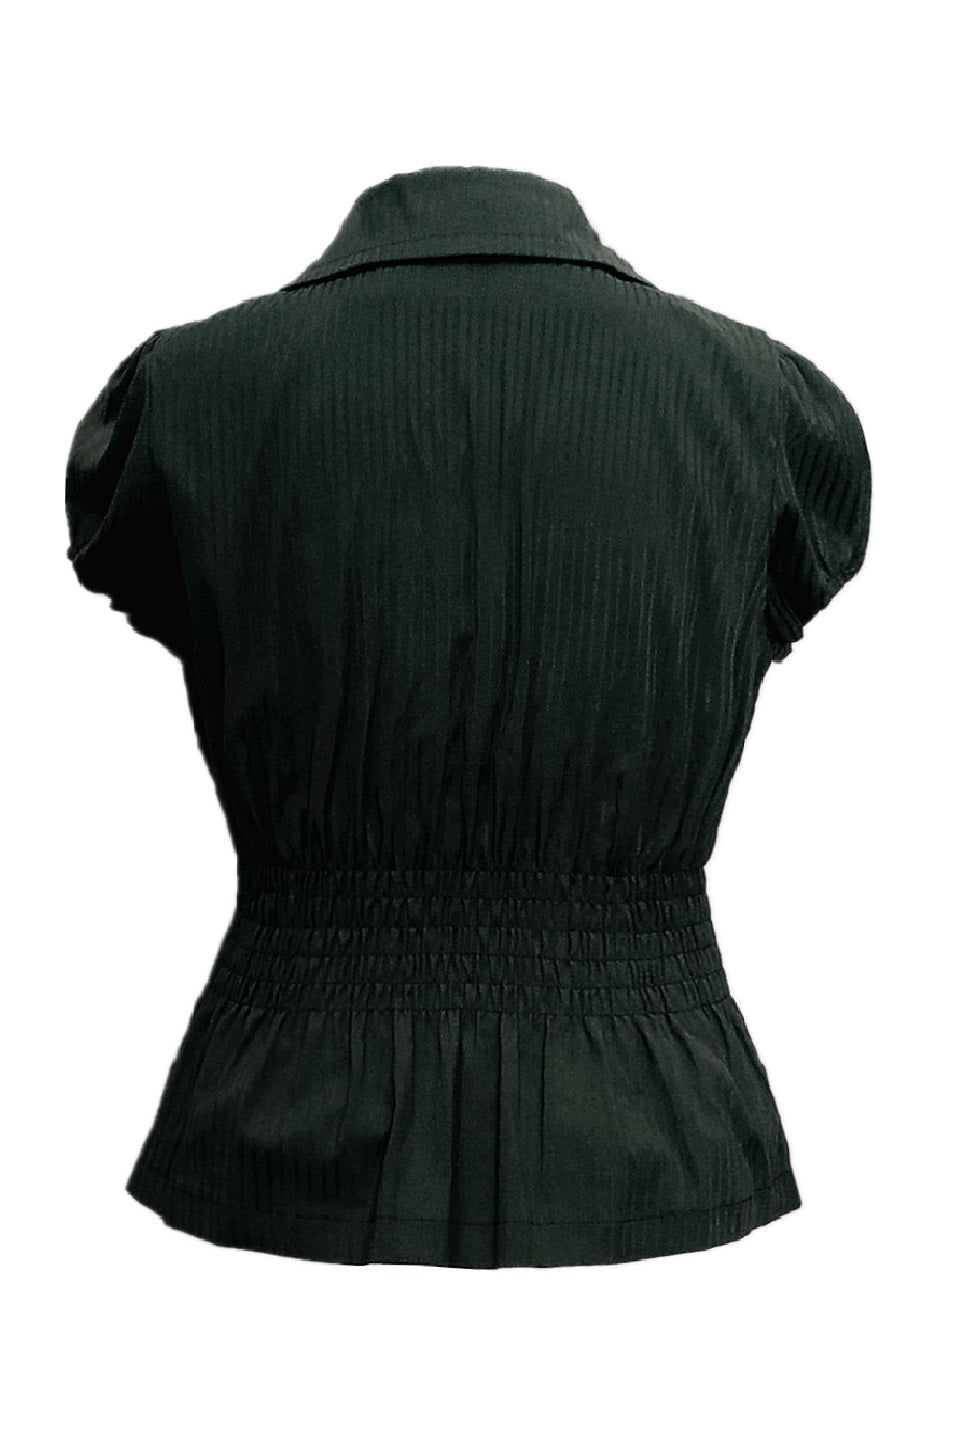 Mckenna short sleeves shirt in black